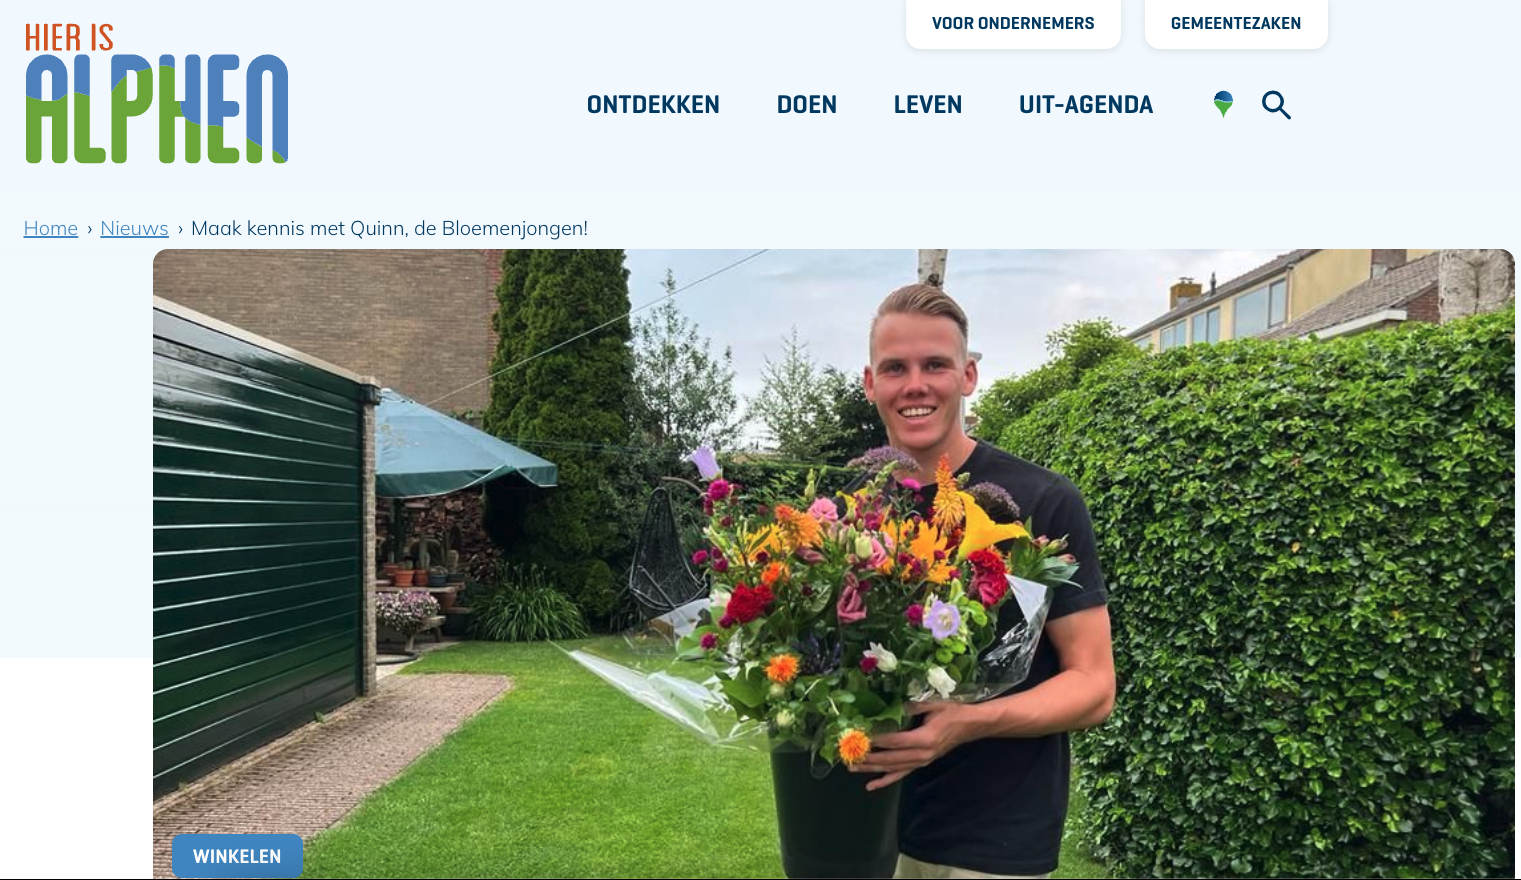 Quinn Cordes met de bloemenjongen op Hierisalphen